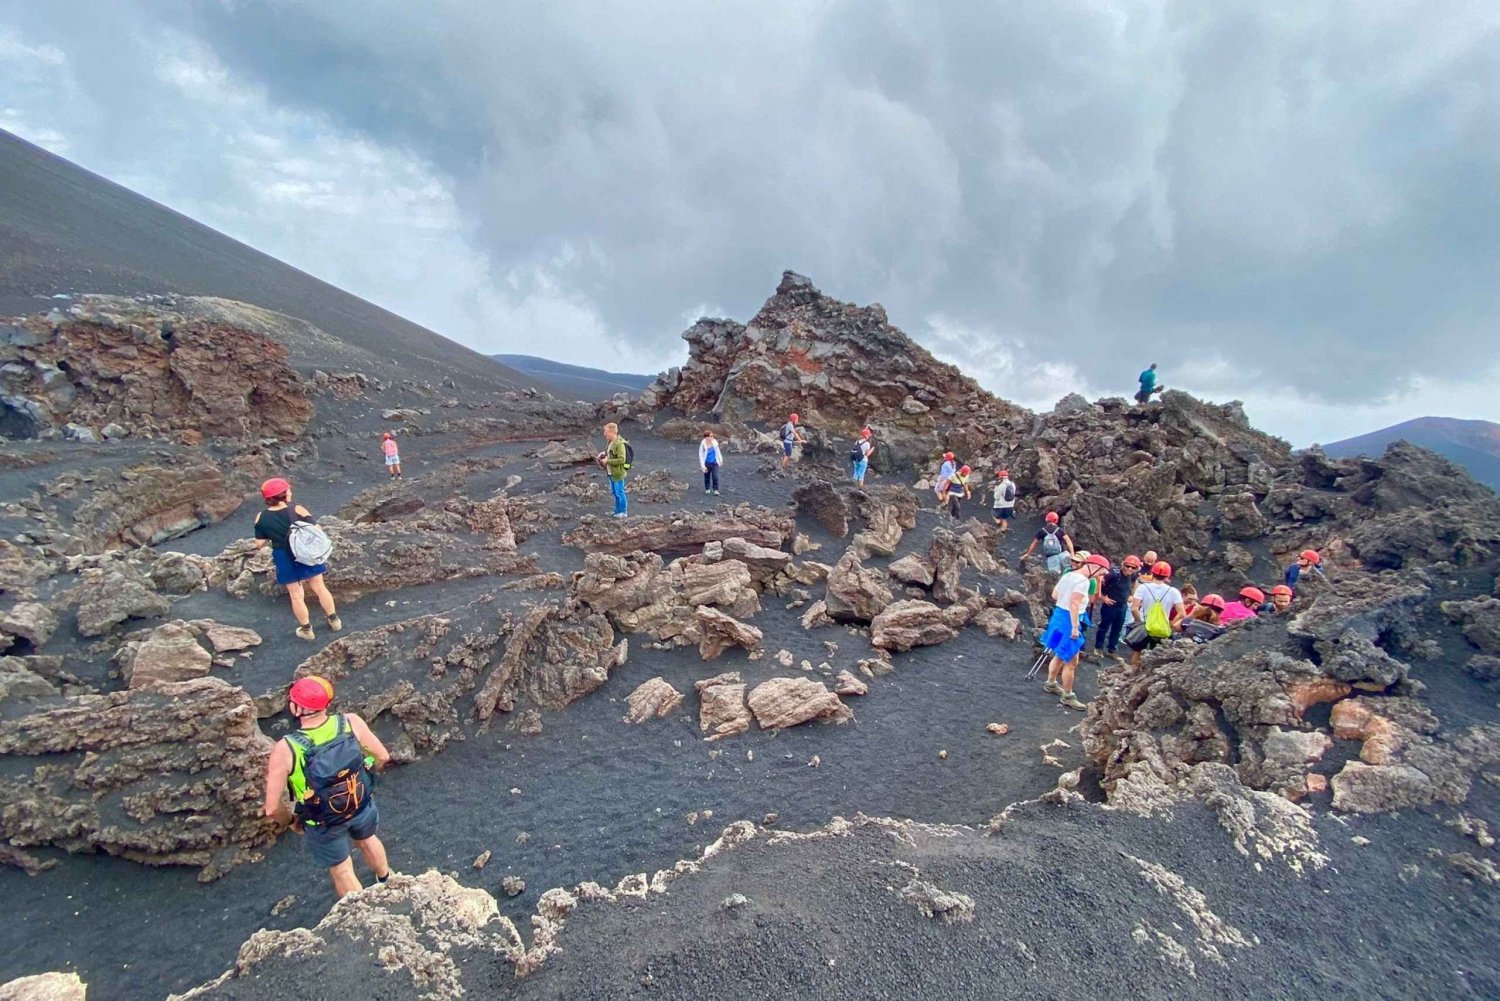 Nicolosi: Excursão às crateras do Etna a 3000 metros de altitude.